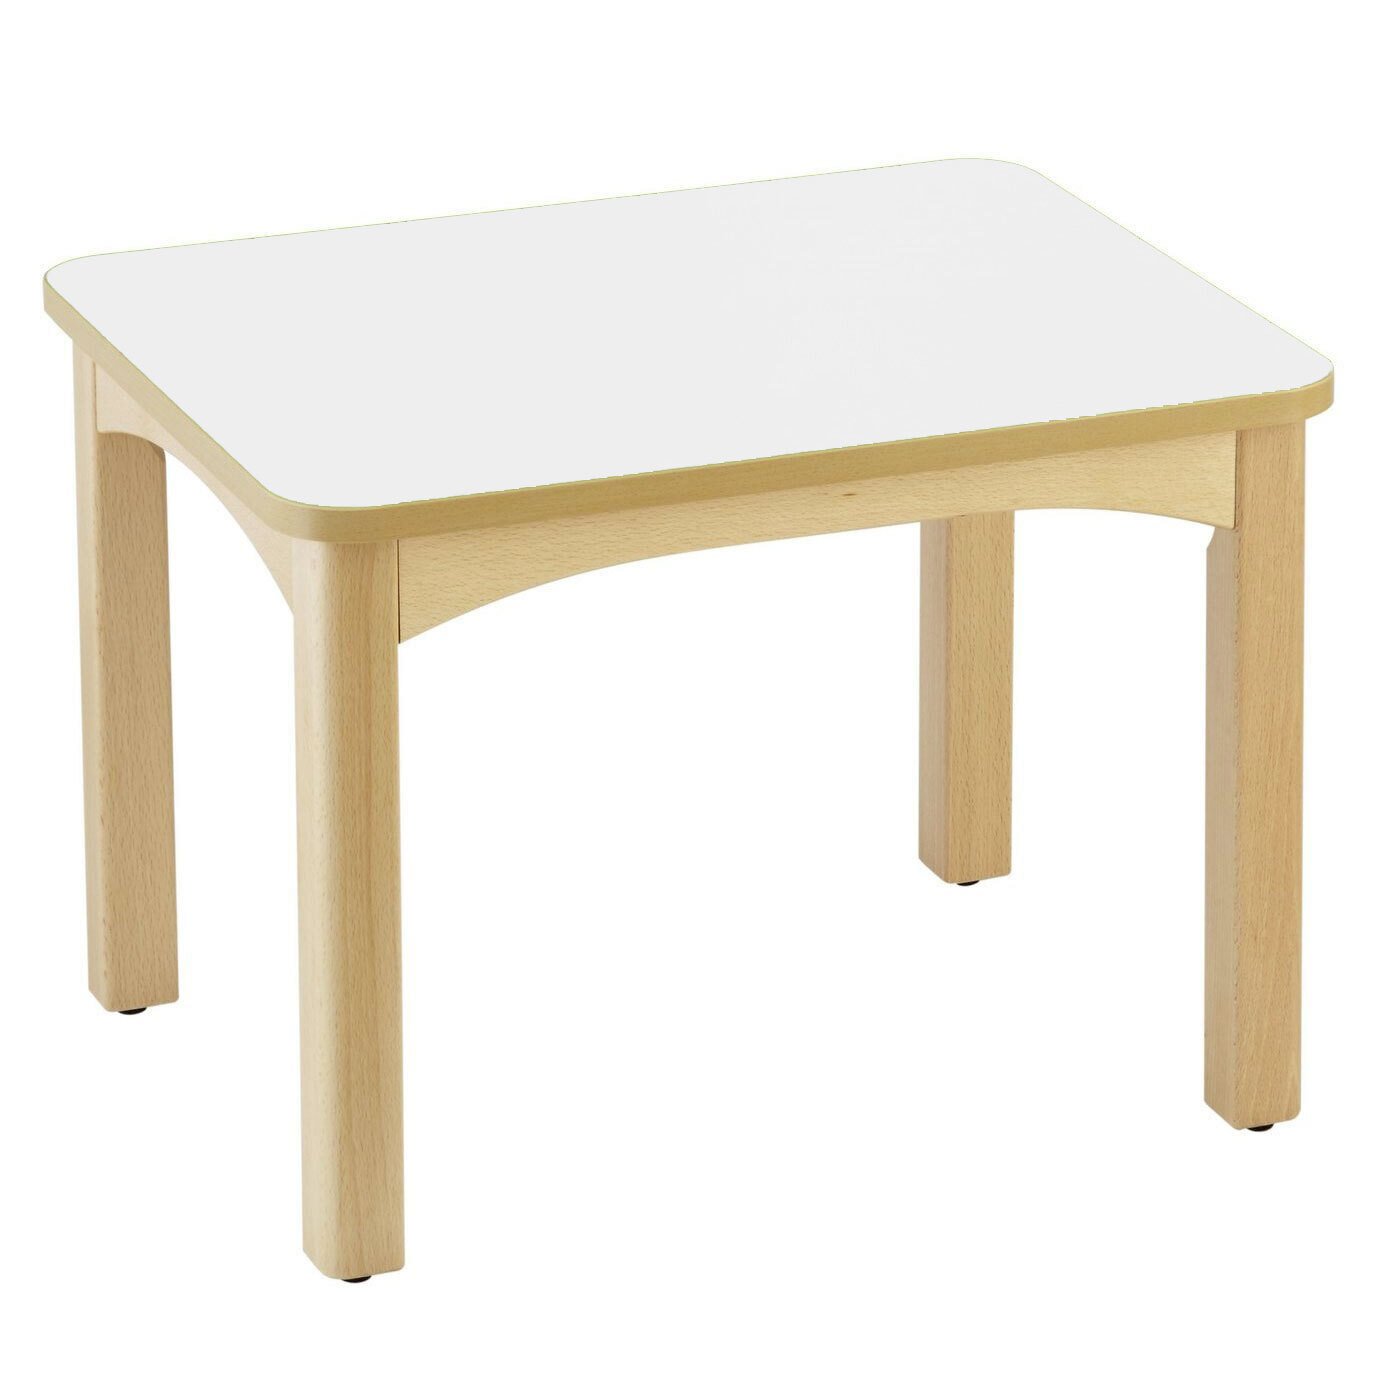 Table en bois pour crèche 60 x 50 cm t1 blanc